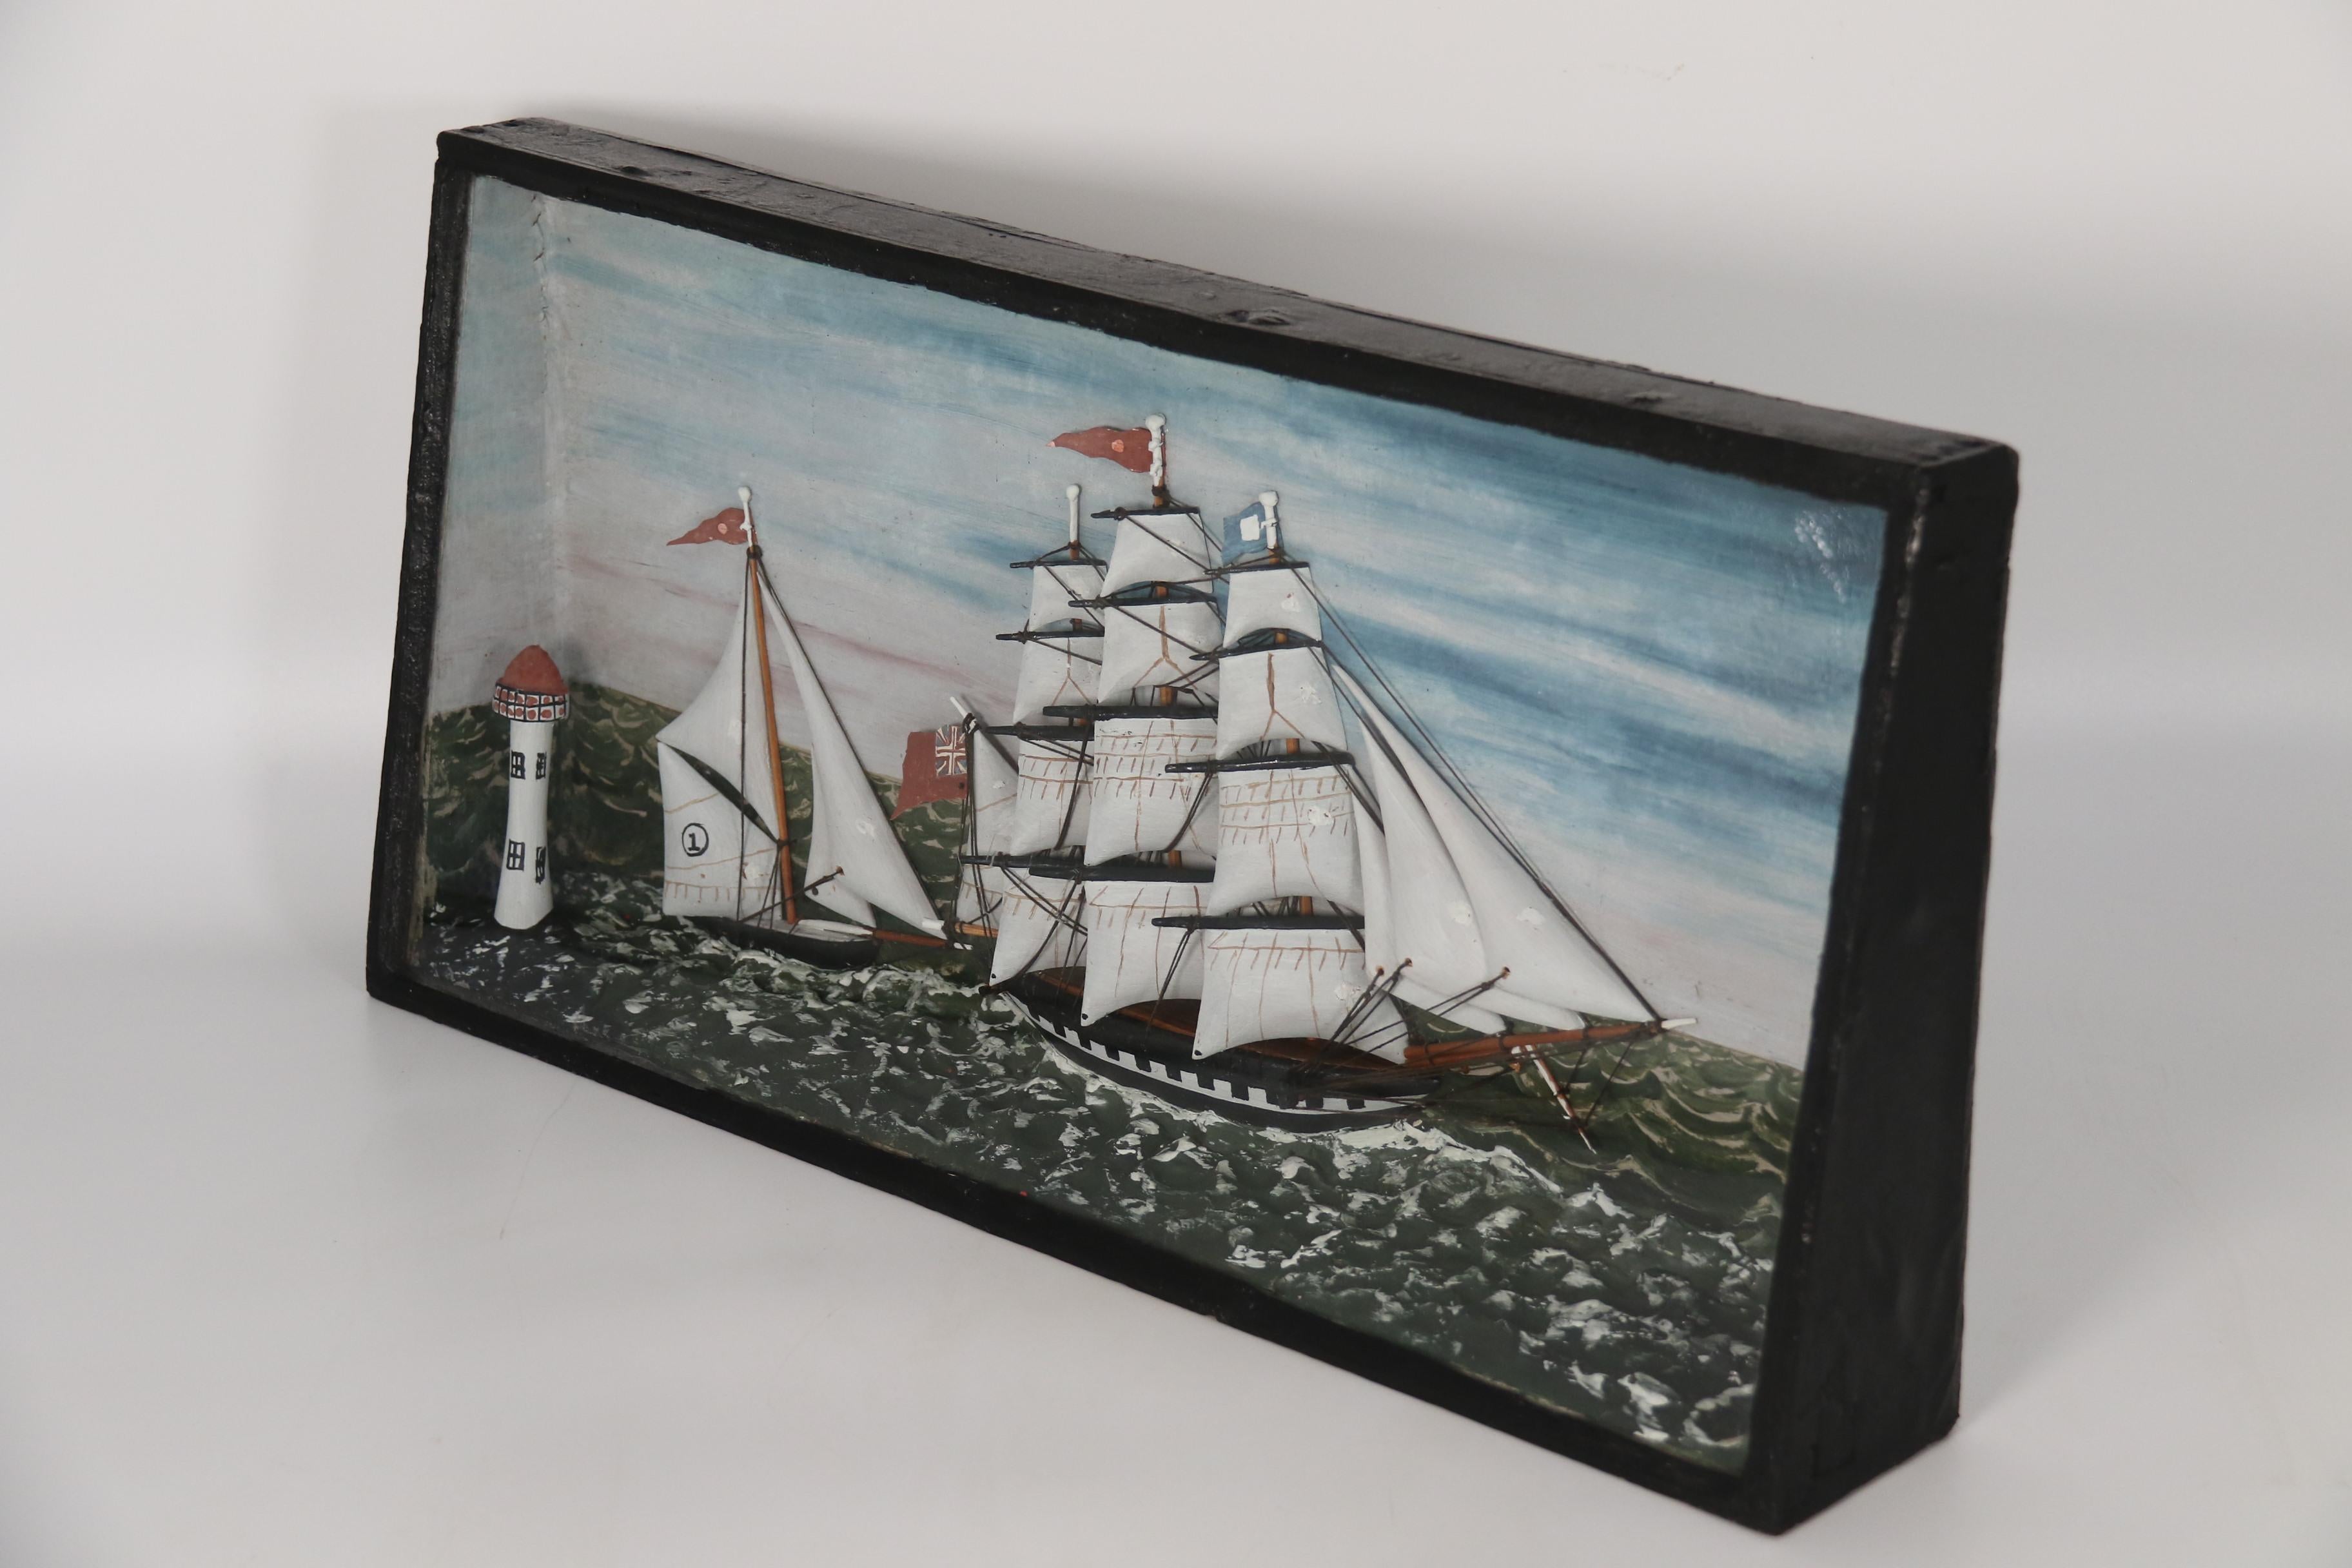 Dieses attraktive Diorama aus der Mitte des 19. Jahrhunderts zeigt eine Ansicht auf See mit einem großen englischen Dreimastschiff, das in einer Rennsituation von einer kleineren und schnelleren Einmastjacht verfolgt wird. Beide fahren an einem